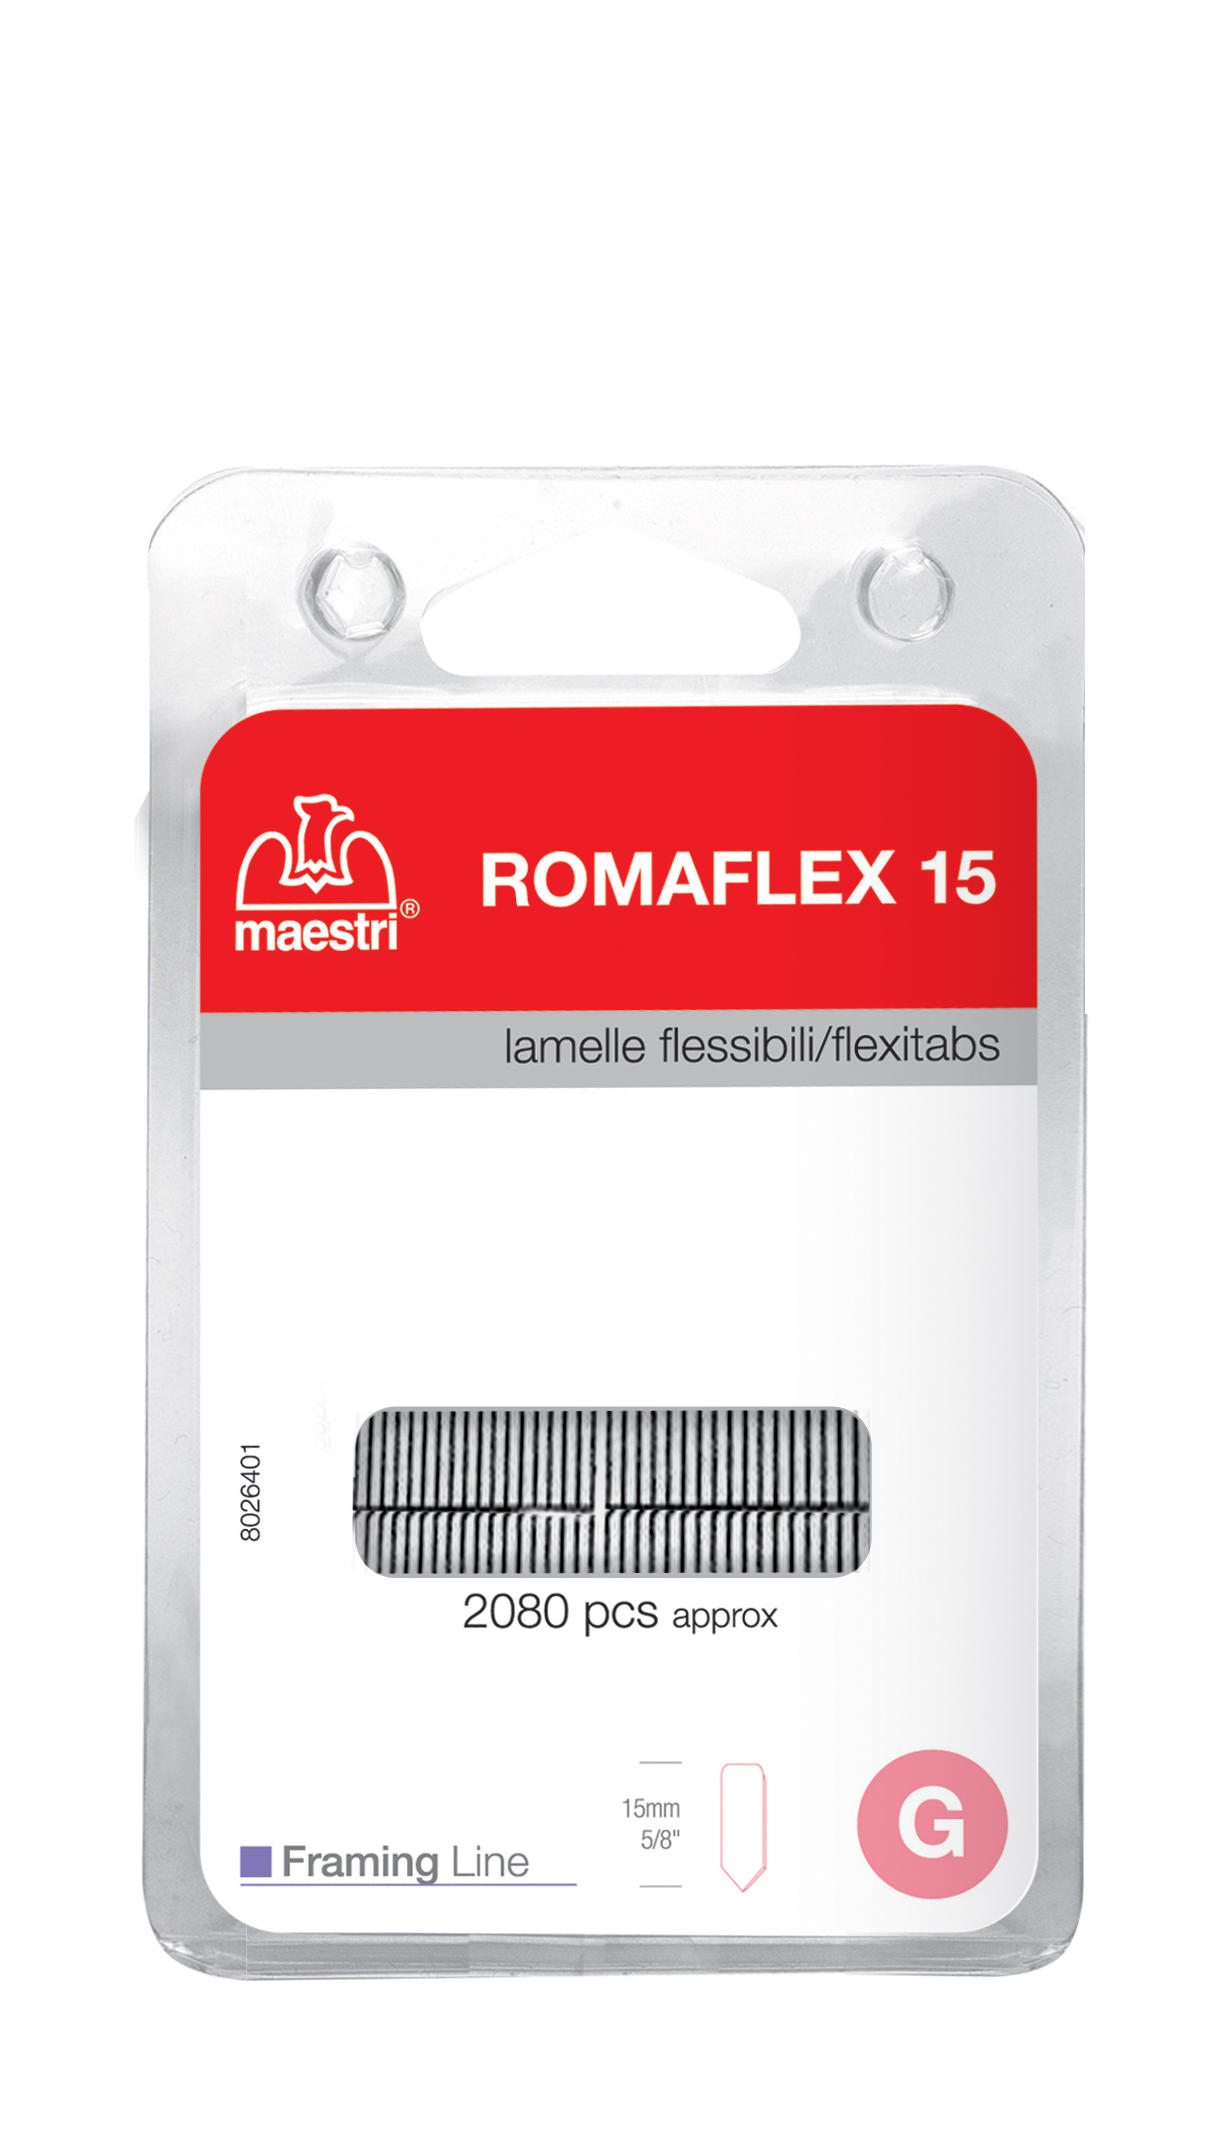 gbc Lamelle flessibili blister ROMAFLEX 15.